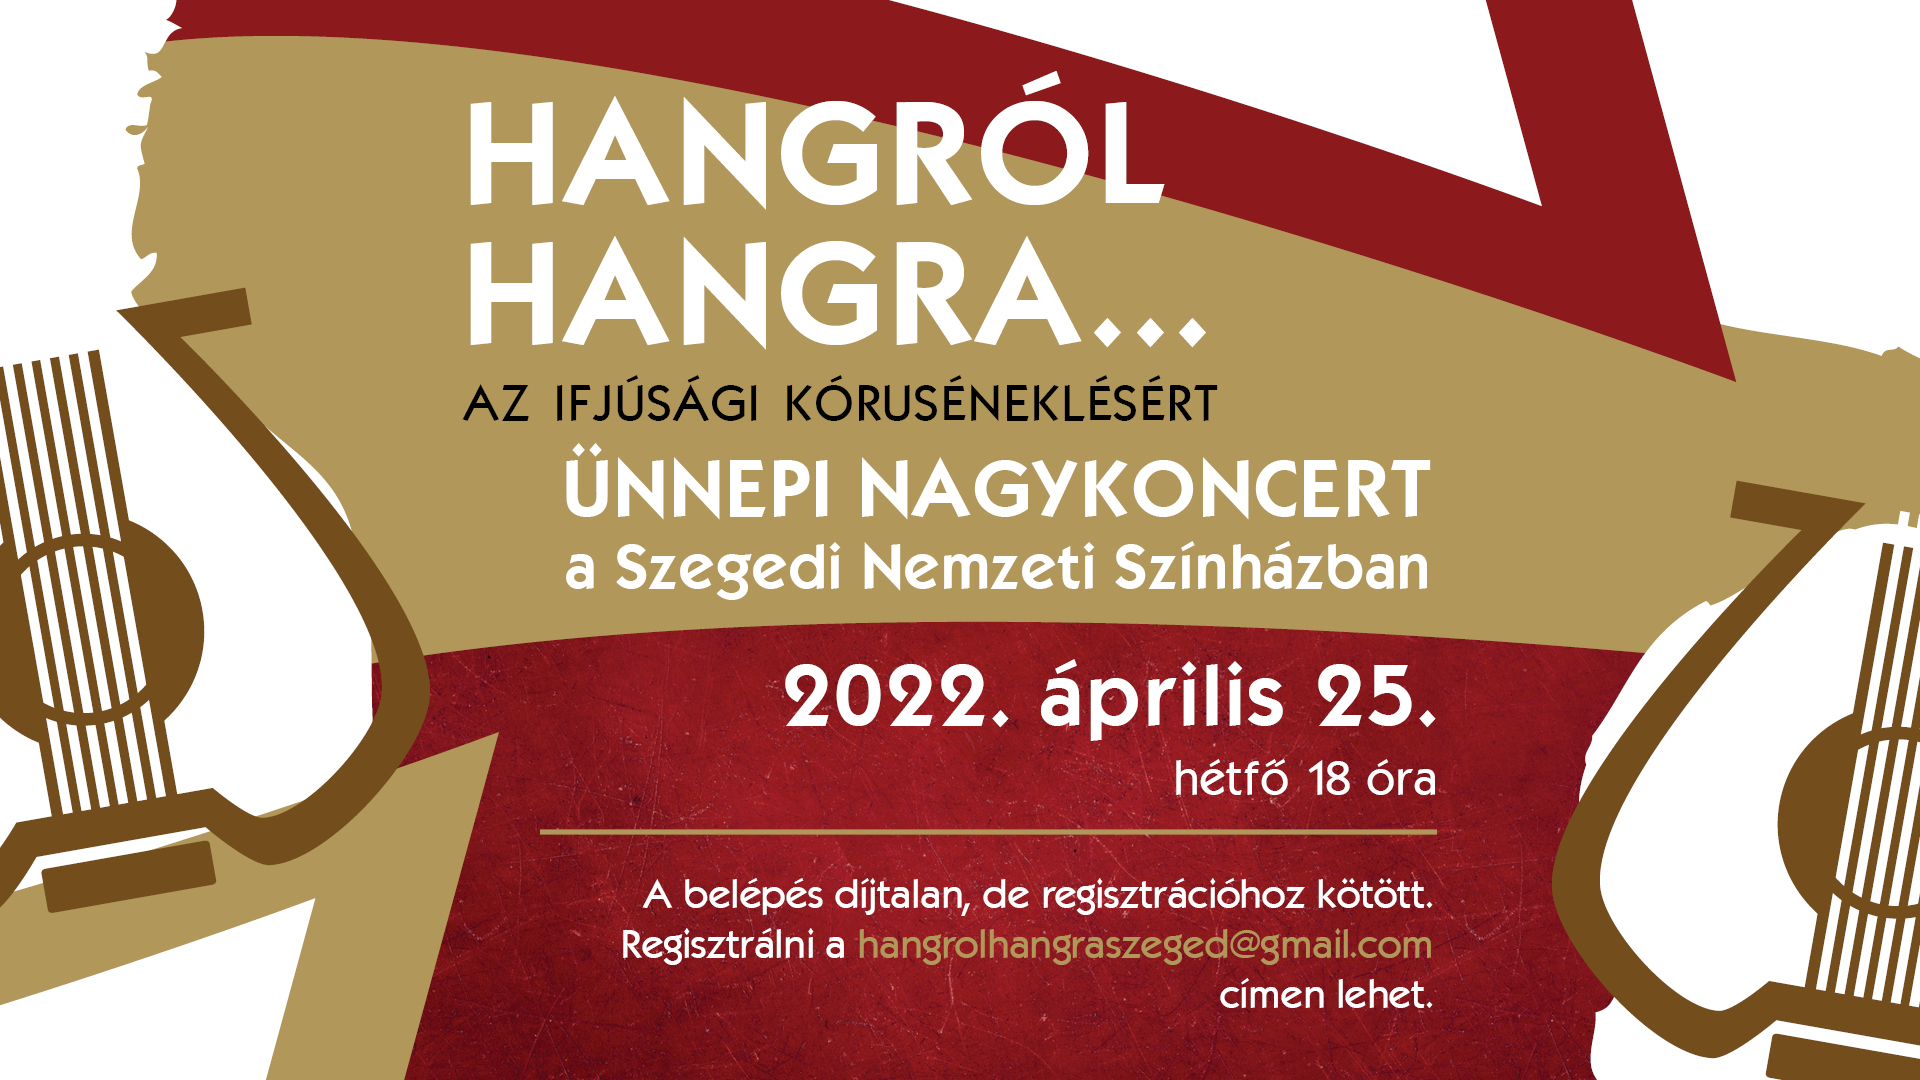 Hangrol_hangra